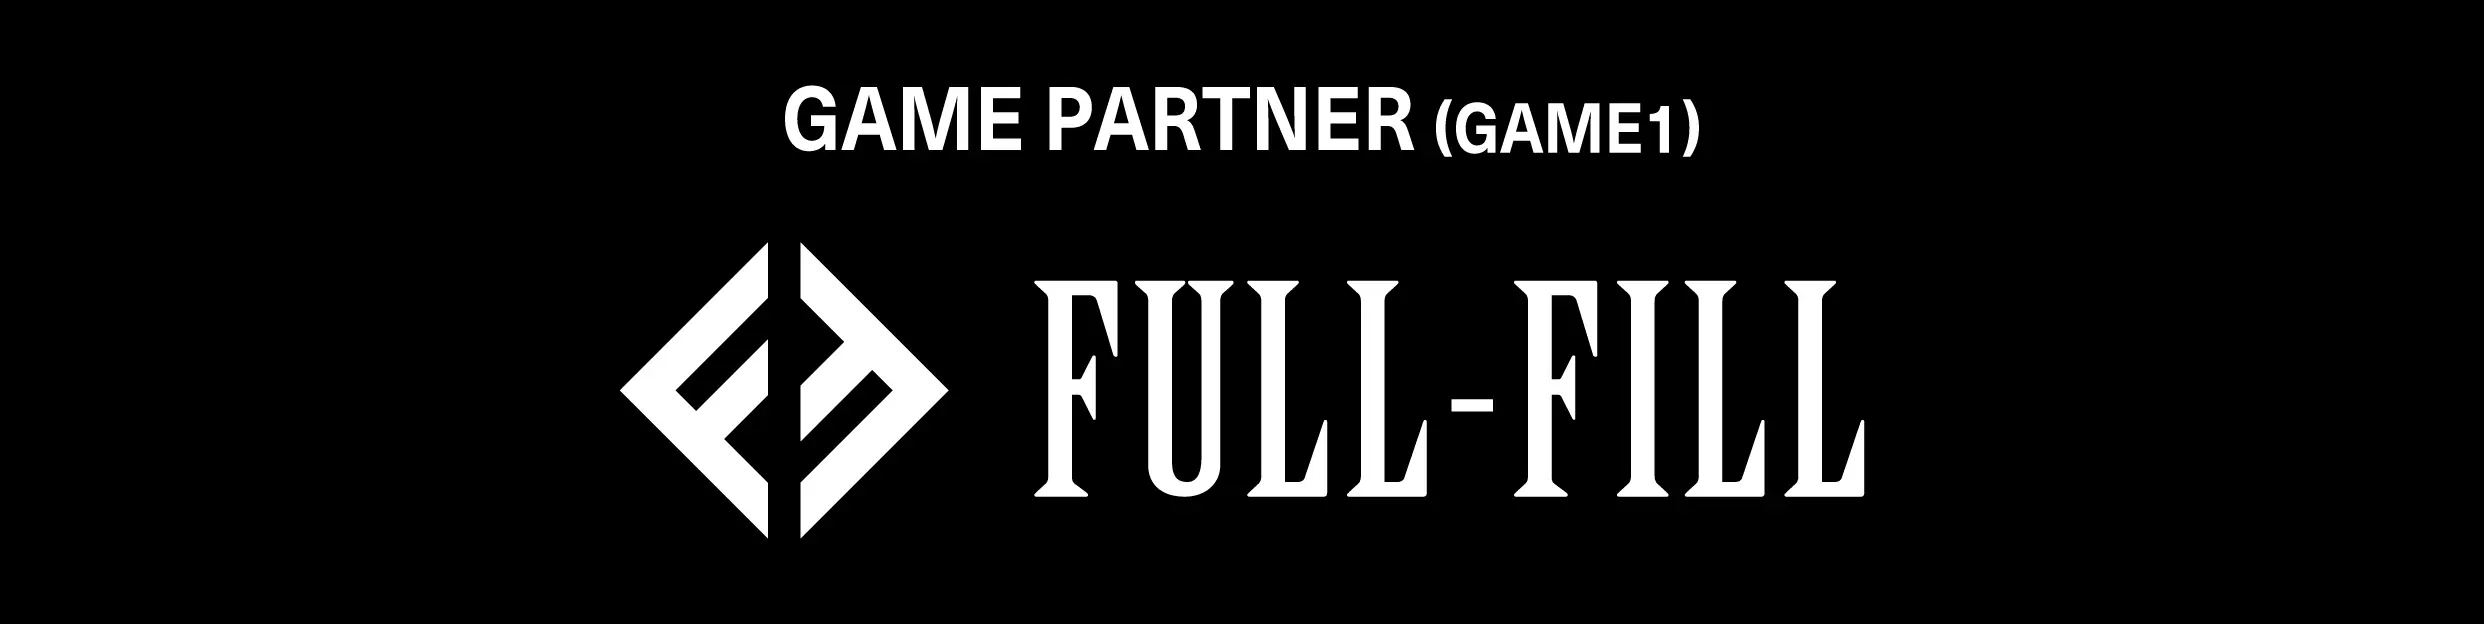 FULL-FILL株式会社